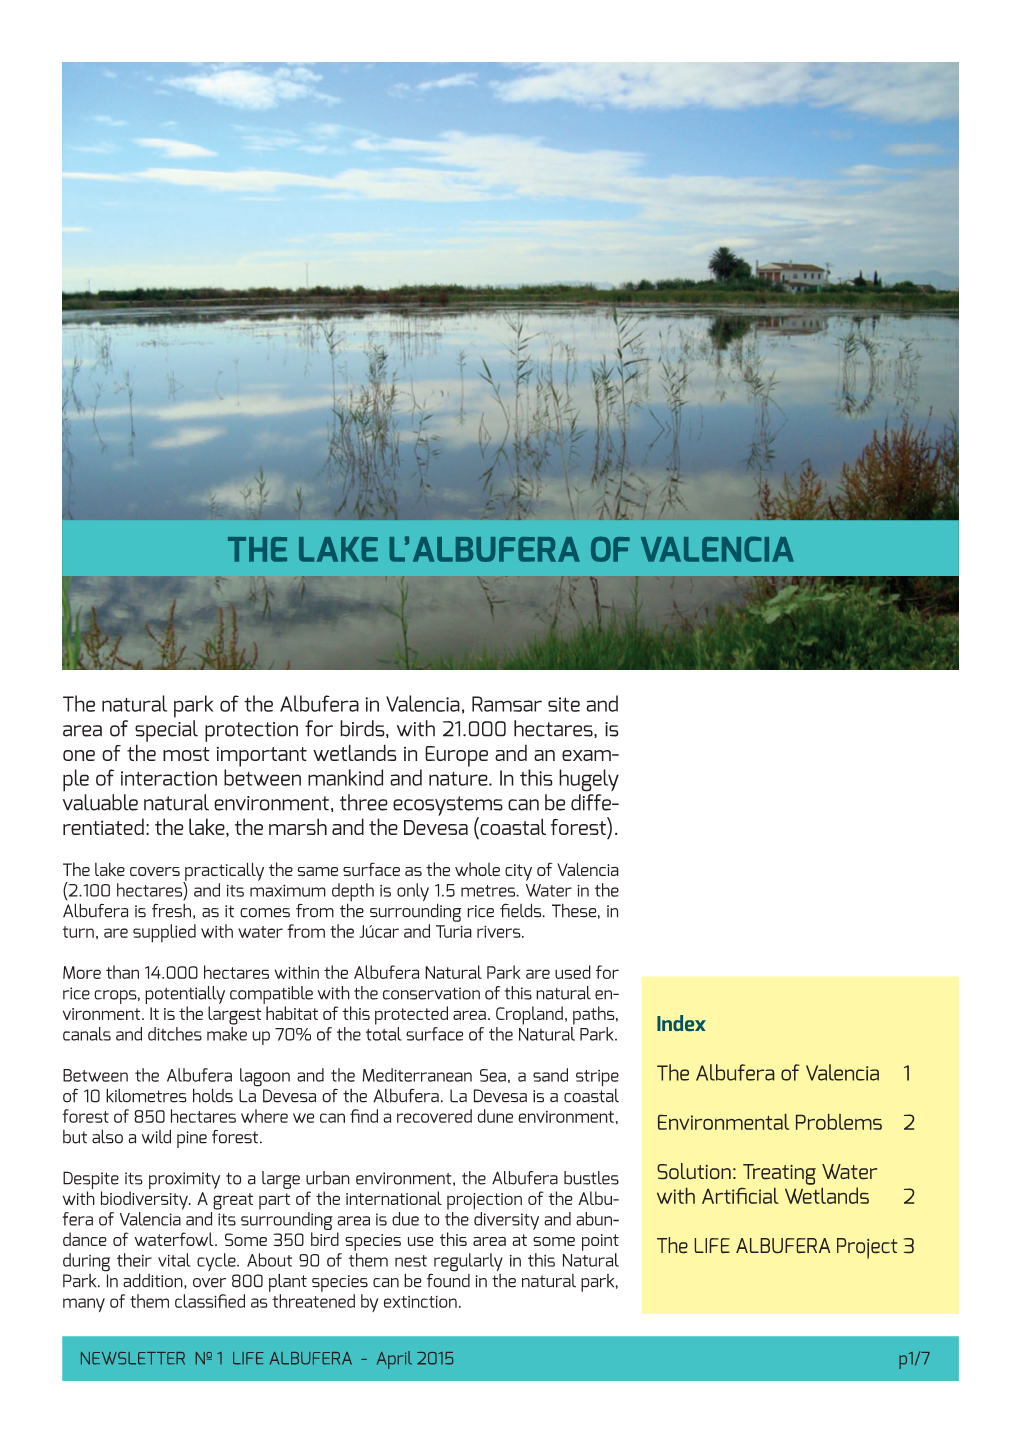 The Lake L'albufera of Valencia